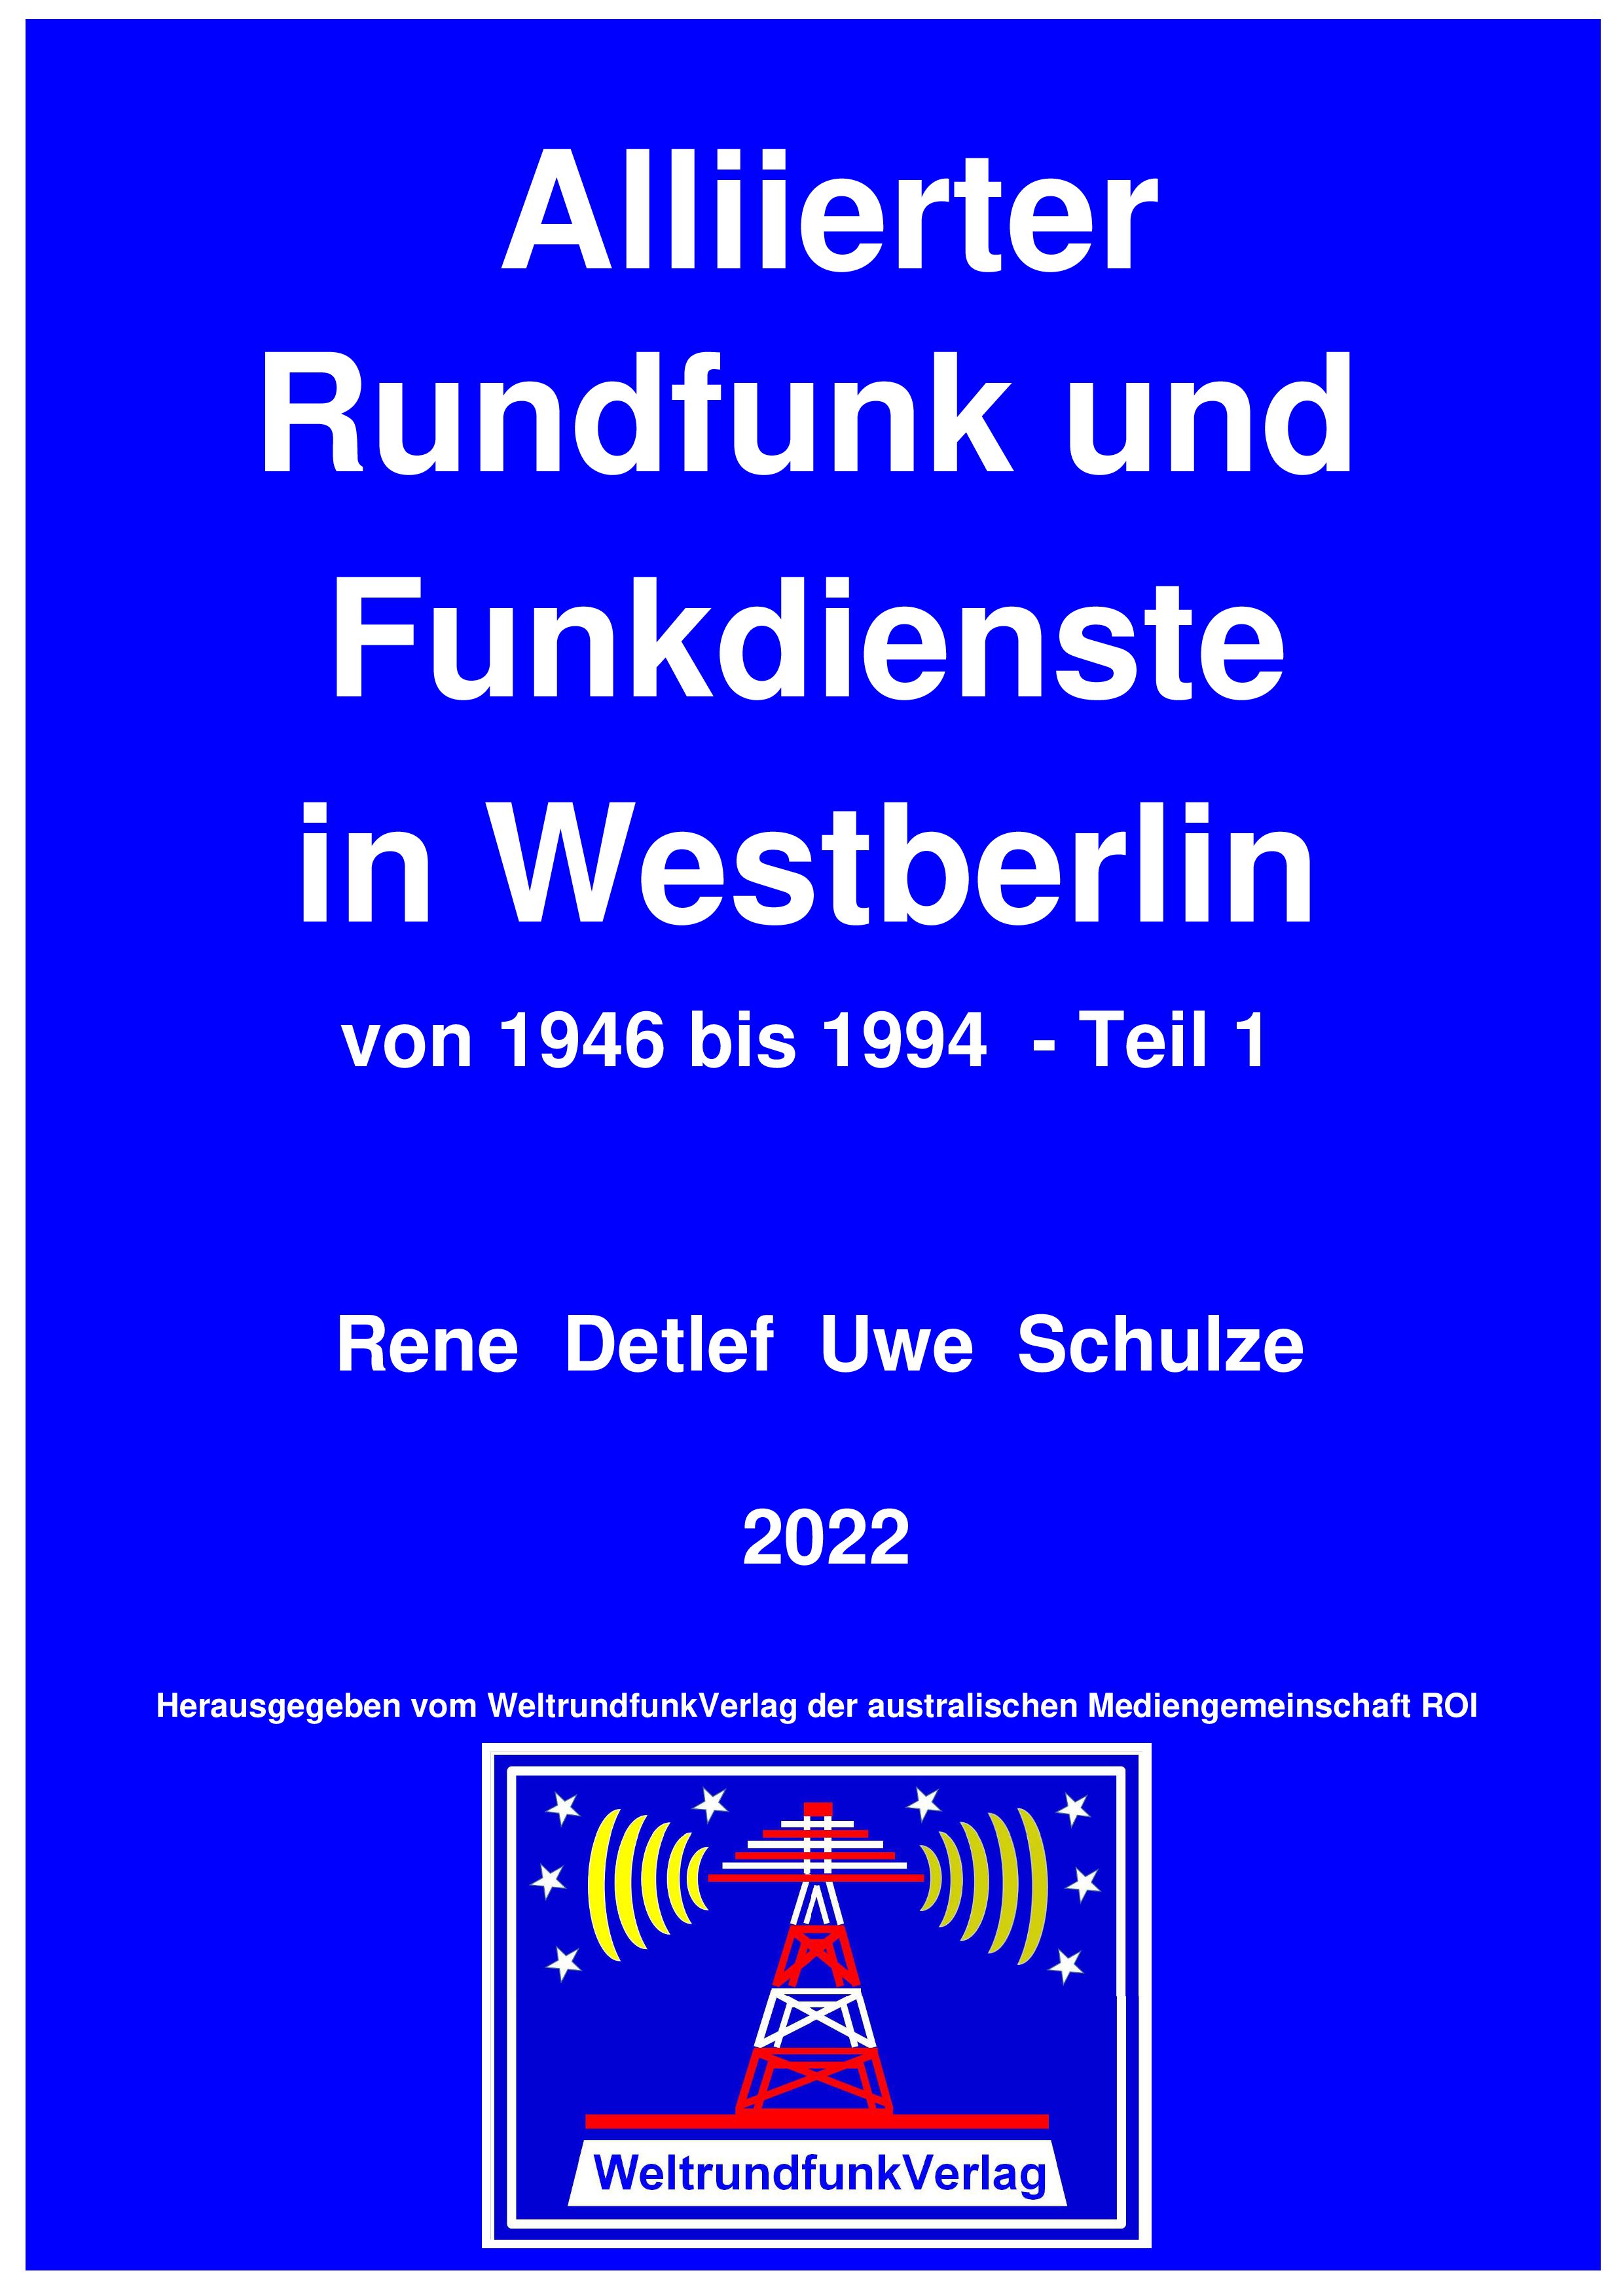  Leseprobe Alliierter Rundfunk und Funkdienste in Westberlin von 1946 bis 1994 - 
Teil 1,  farbig, 615 Seiten, 2022, Leseprobe 